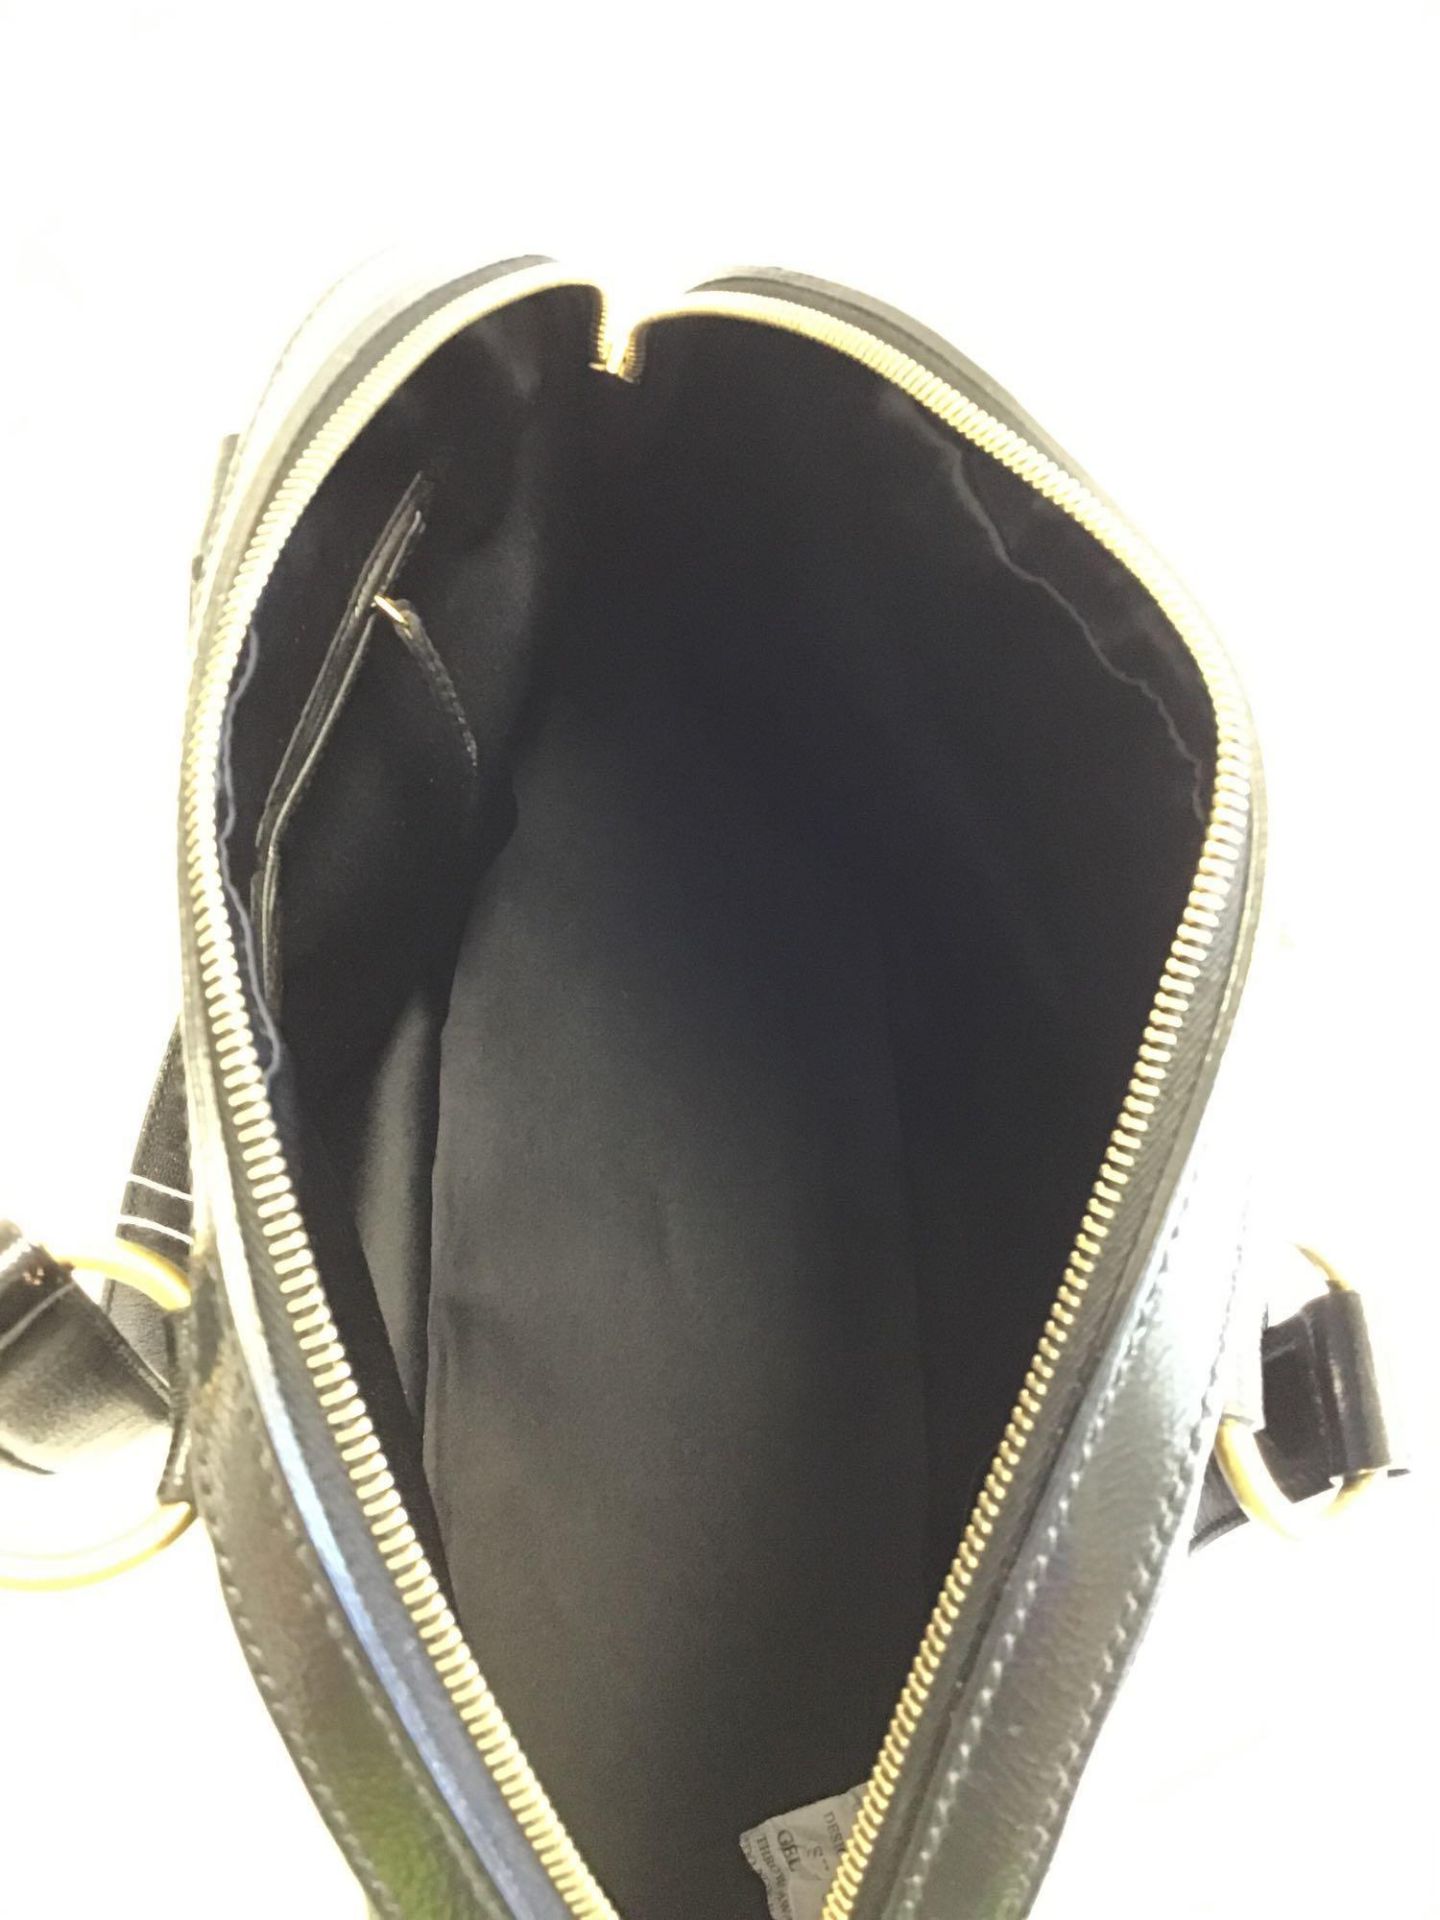 Yves St-Laurent Black Muse 1 Shoulder Bag - Image 7 of 17